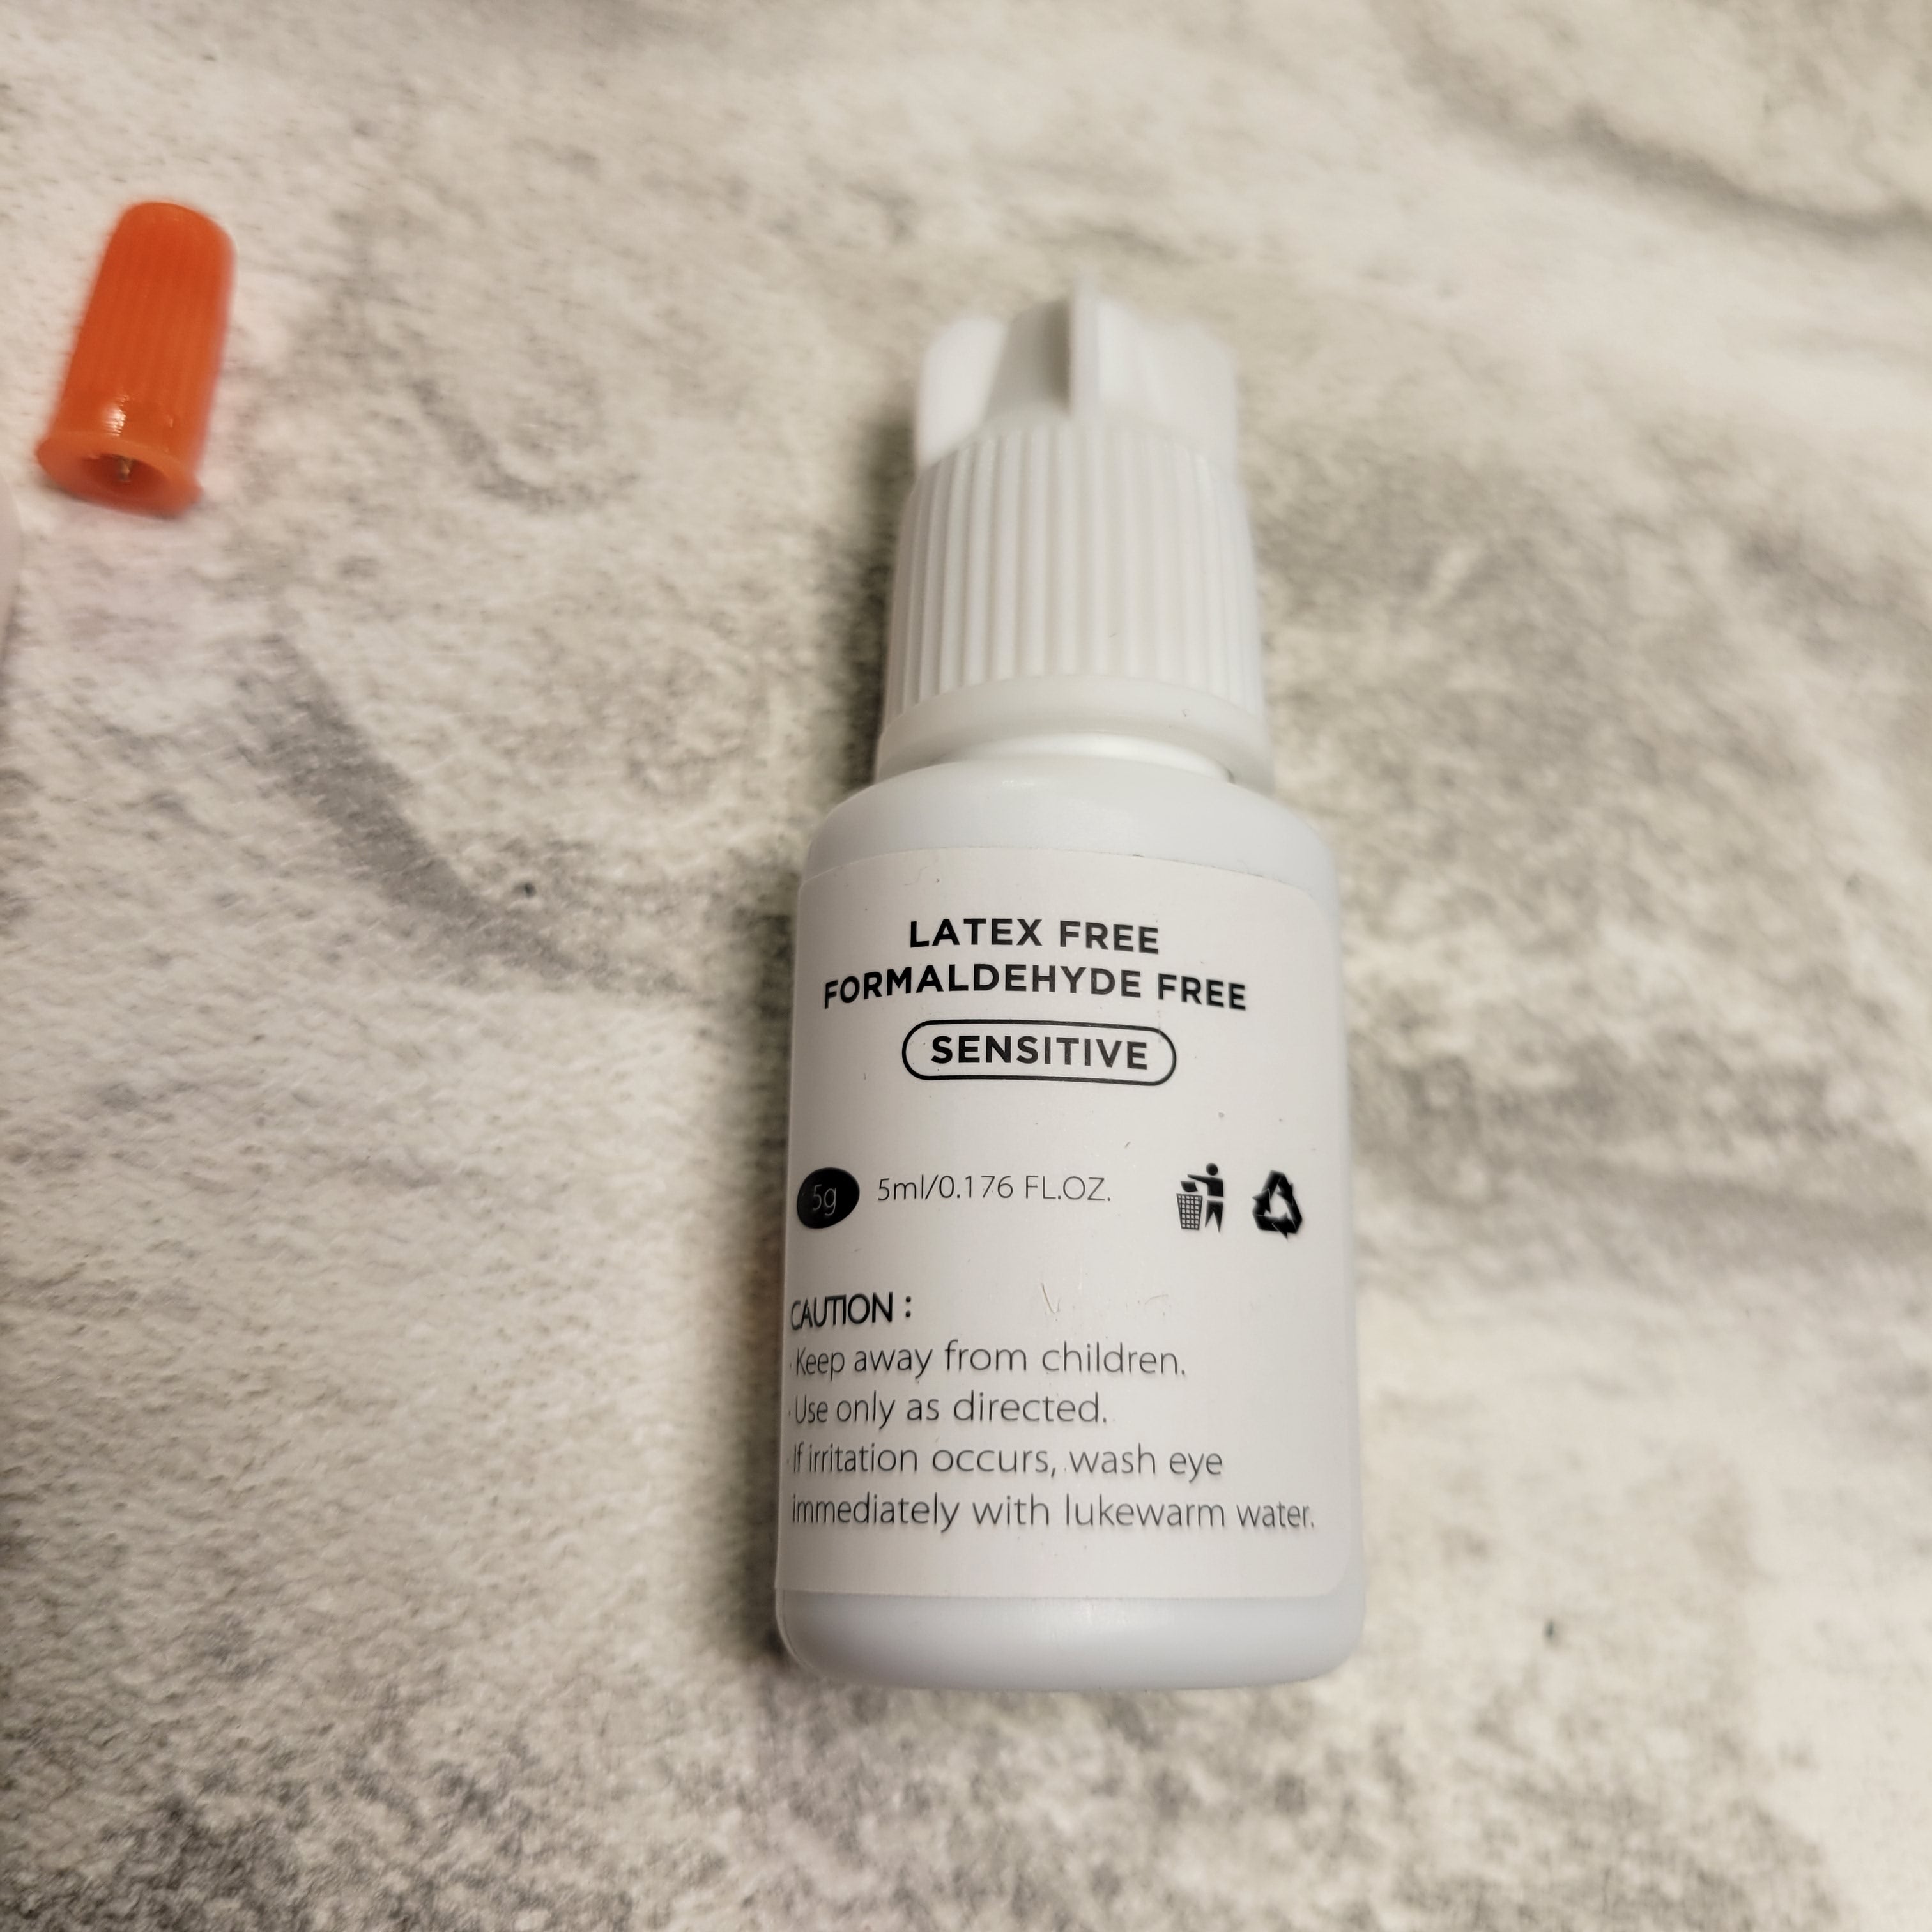 BEYELIAN Gentle Lash Glue, Eyelash Extension Adhesive, Waterproof, 5ml (7656593850606)